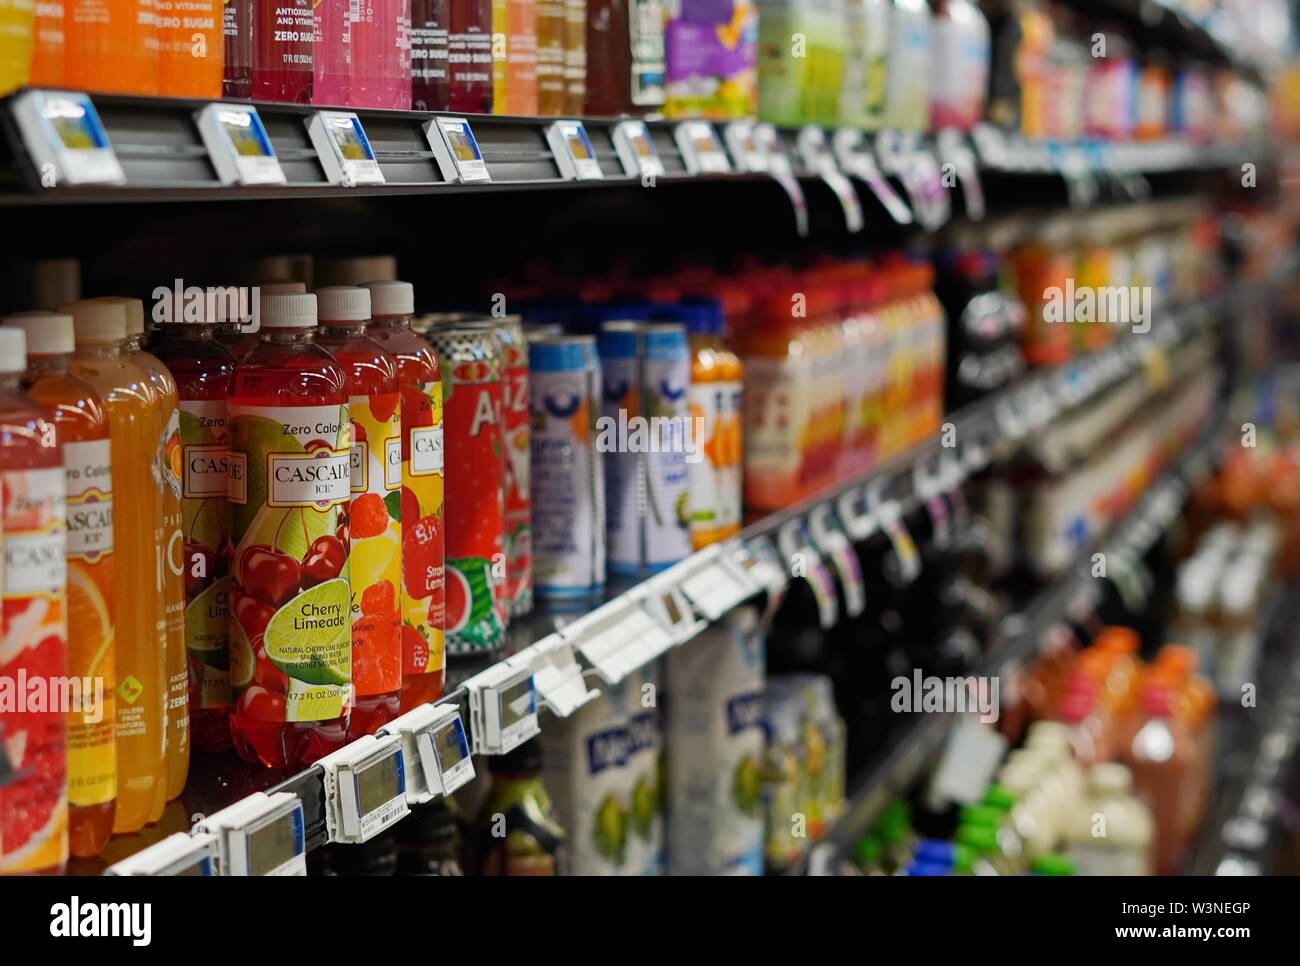 New London, CT / USA - 2 juin 2019 : Des étagères pleines de boissons santé au supermarché Banque D'Images